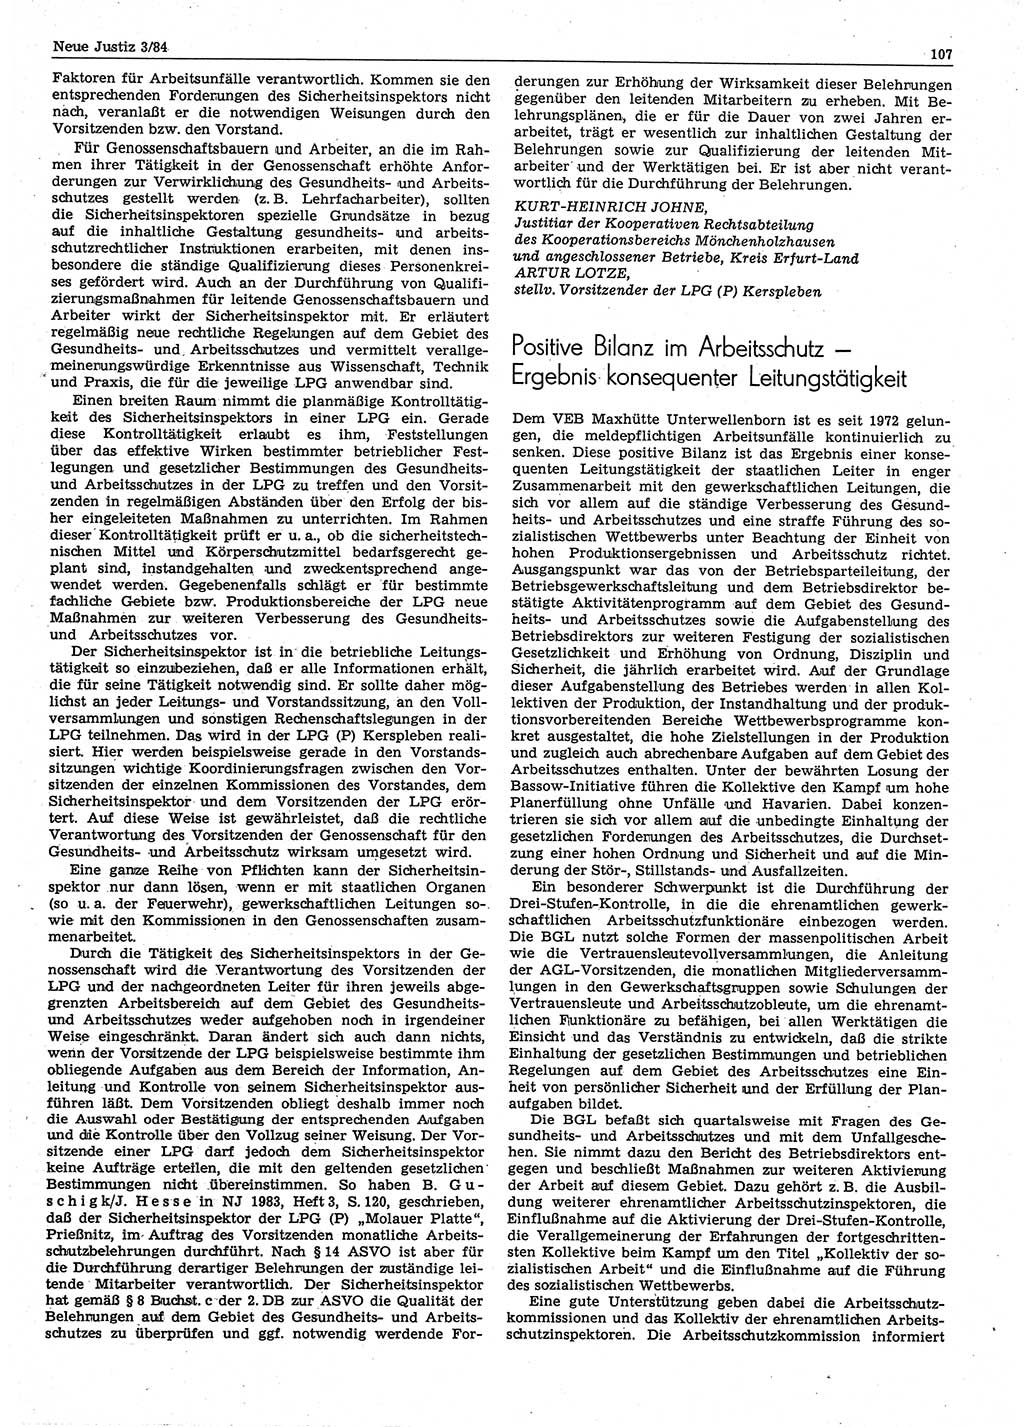 Neue Justiz (NJ), Zeitschrift für sozialistisches Recht und Gesetzlichkeit [Deutsche Demokratische Republik (DDR)], 38. Jahrgang 1984, Seite 107 (NJ DDR 1984, S. 107)